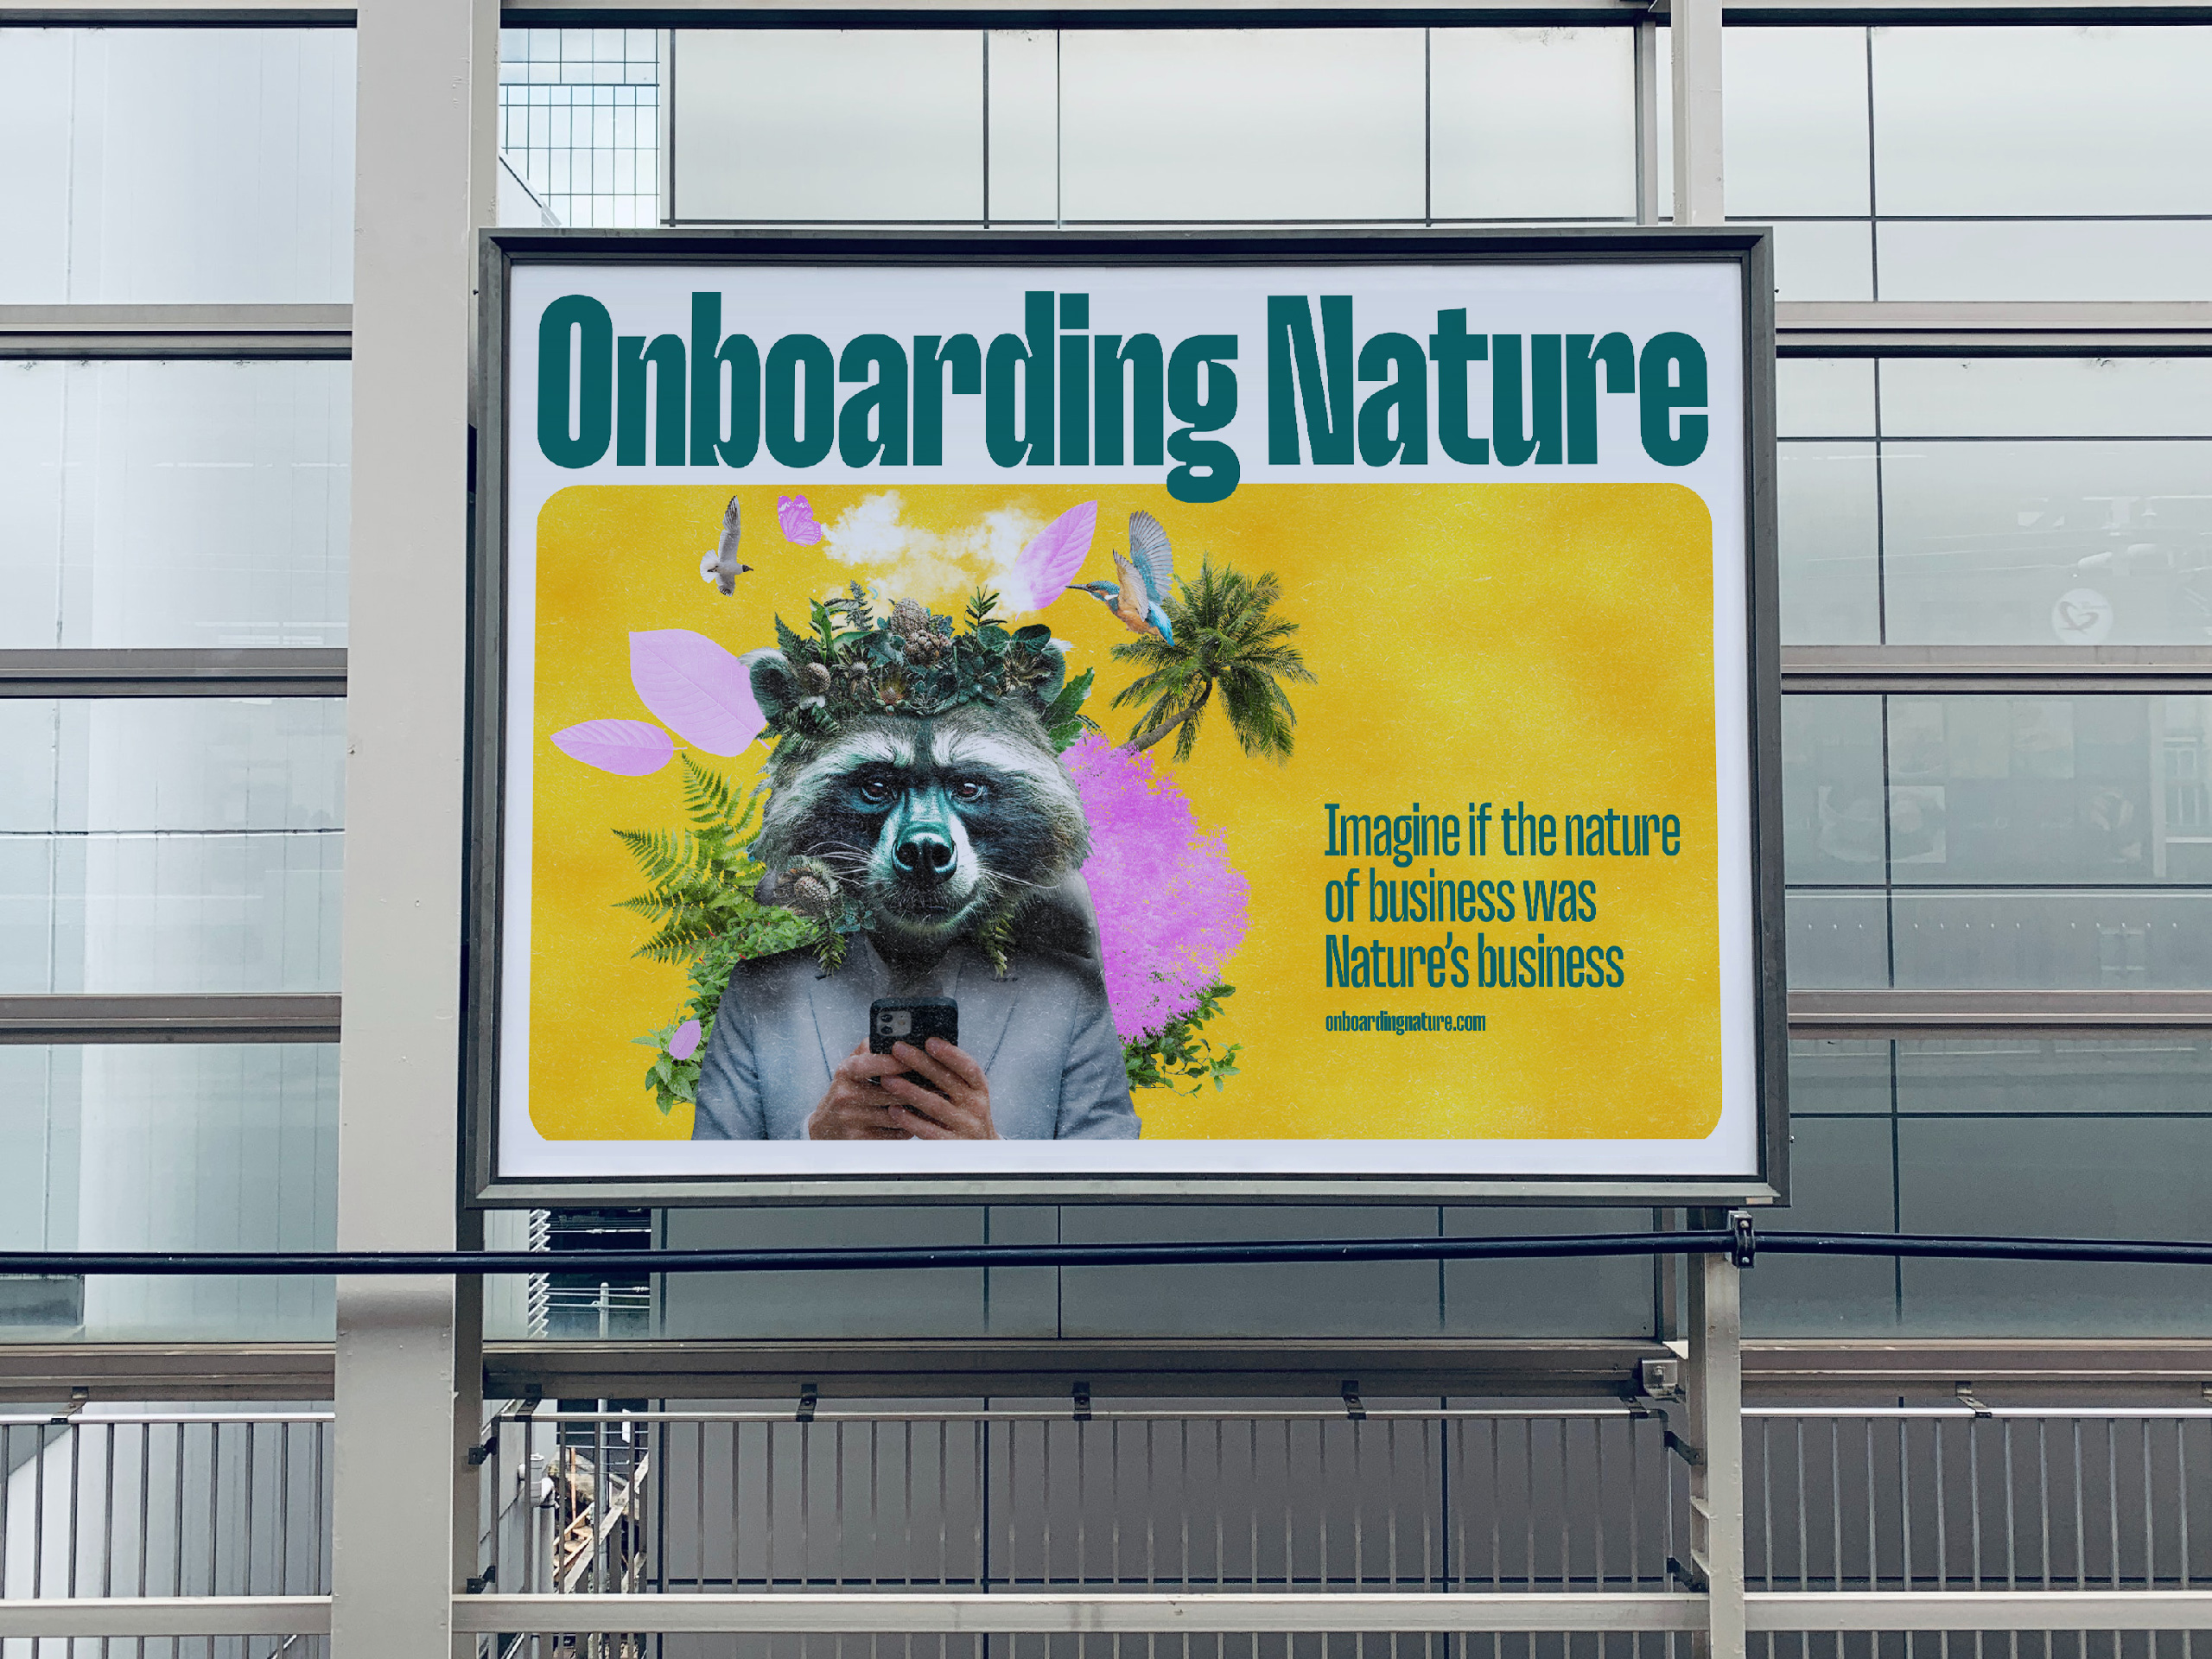 Onboarding Nature: Geef de natuur een centrale rol in je bedrijf